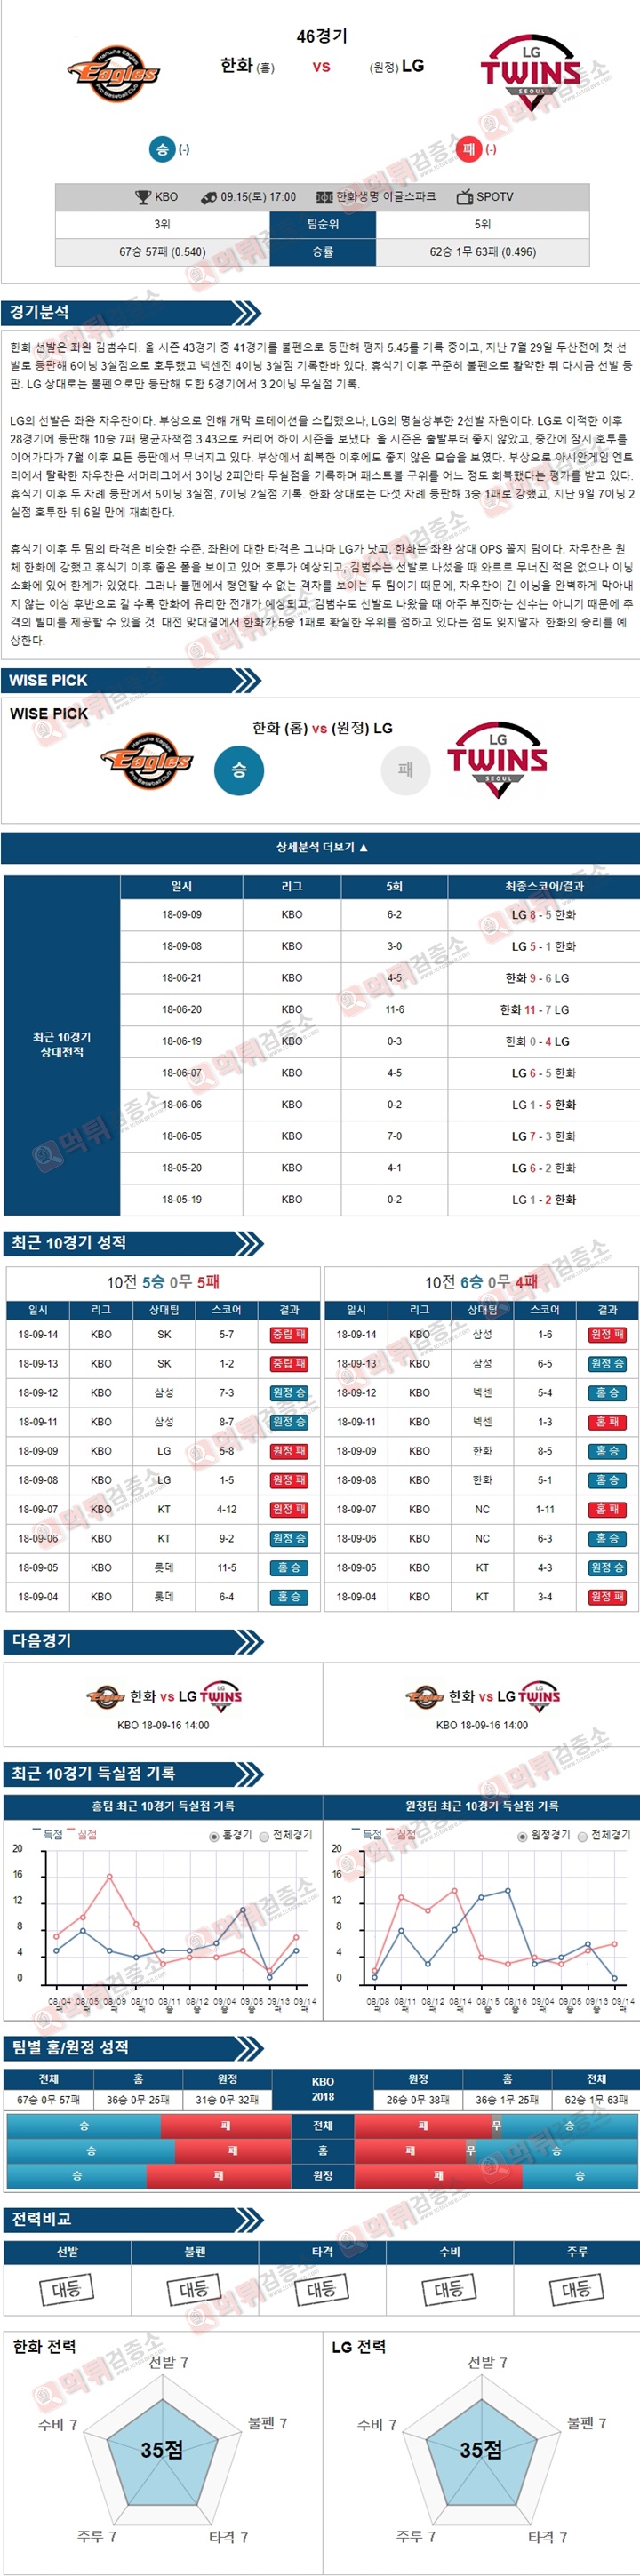 스포츠토토 분석픽 KBO 9월15일 한화 vs LG 먹튀 검증소 분석픽